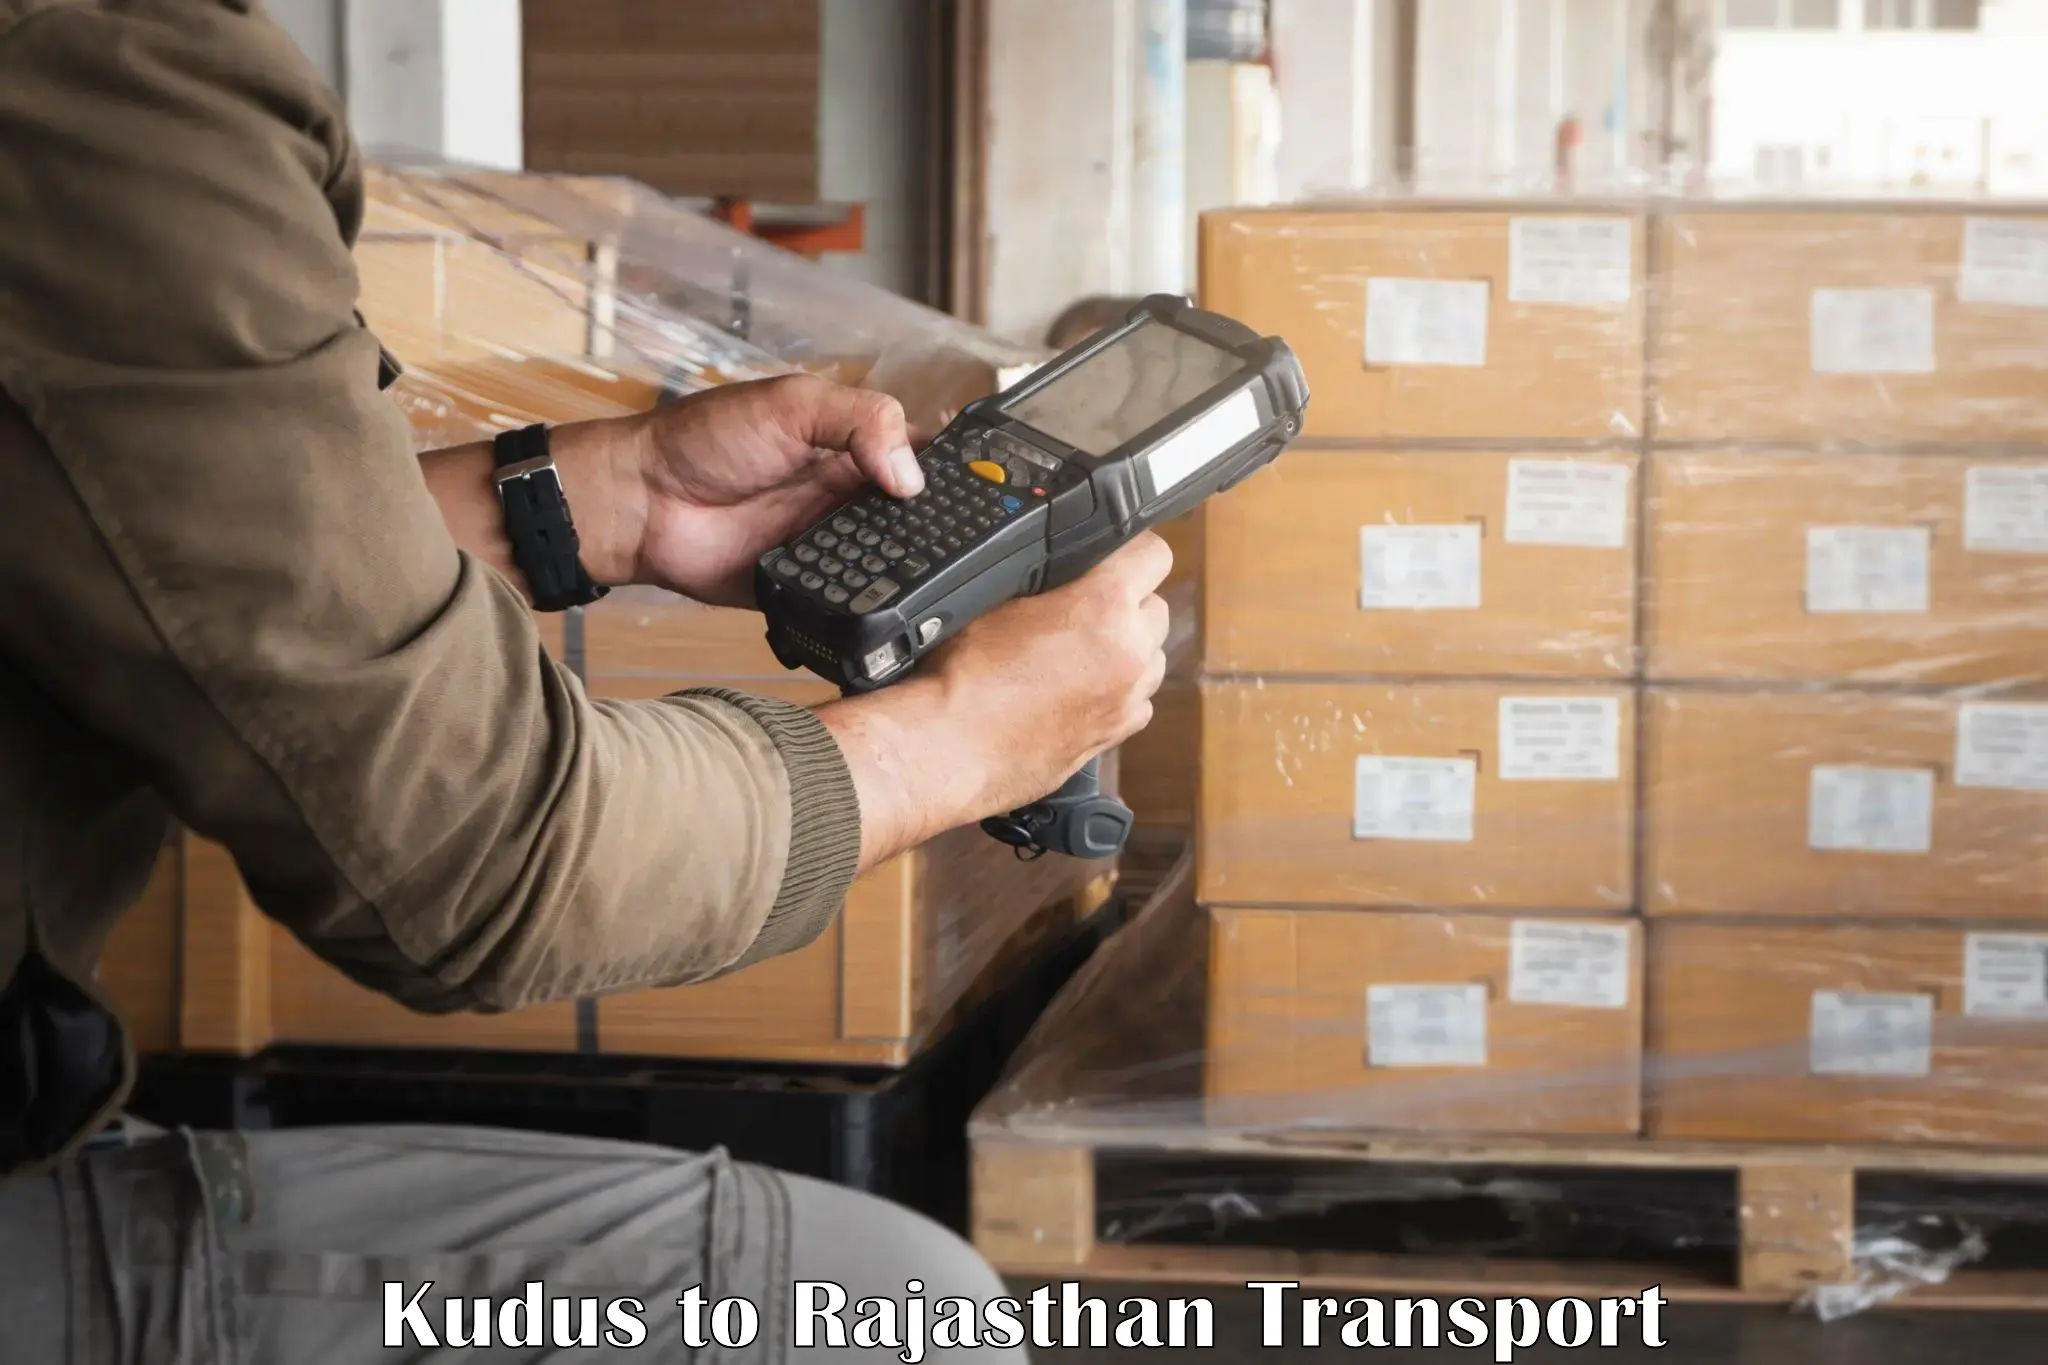 Online transport service Kudus to Banswara